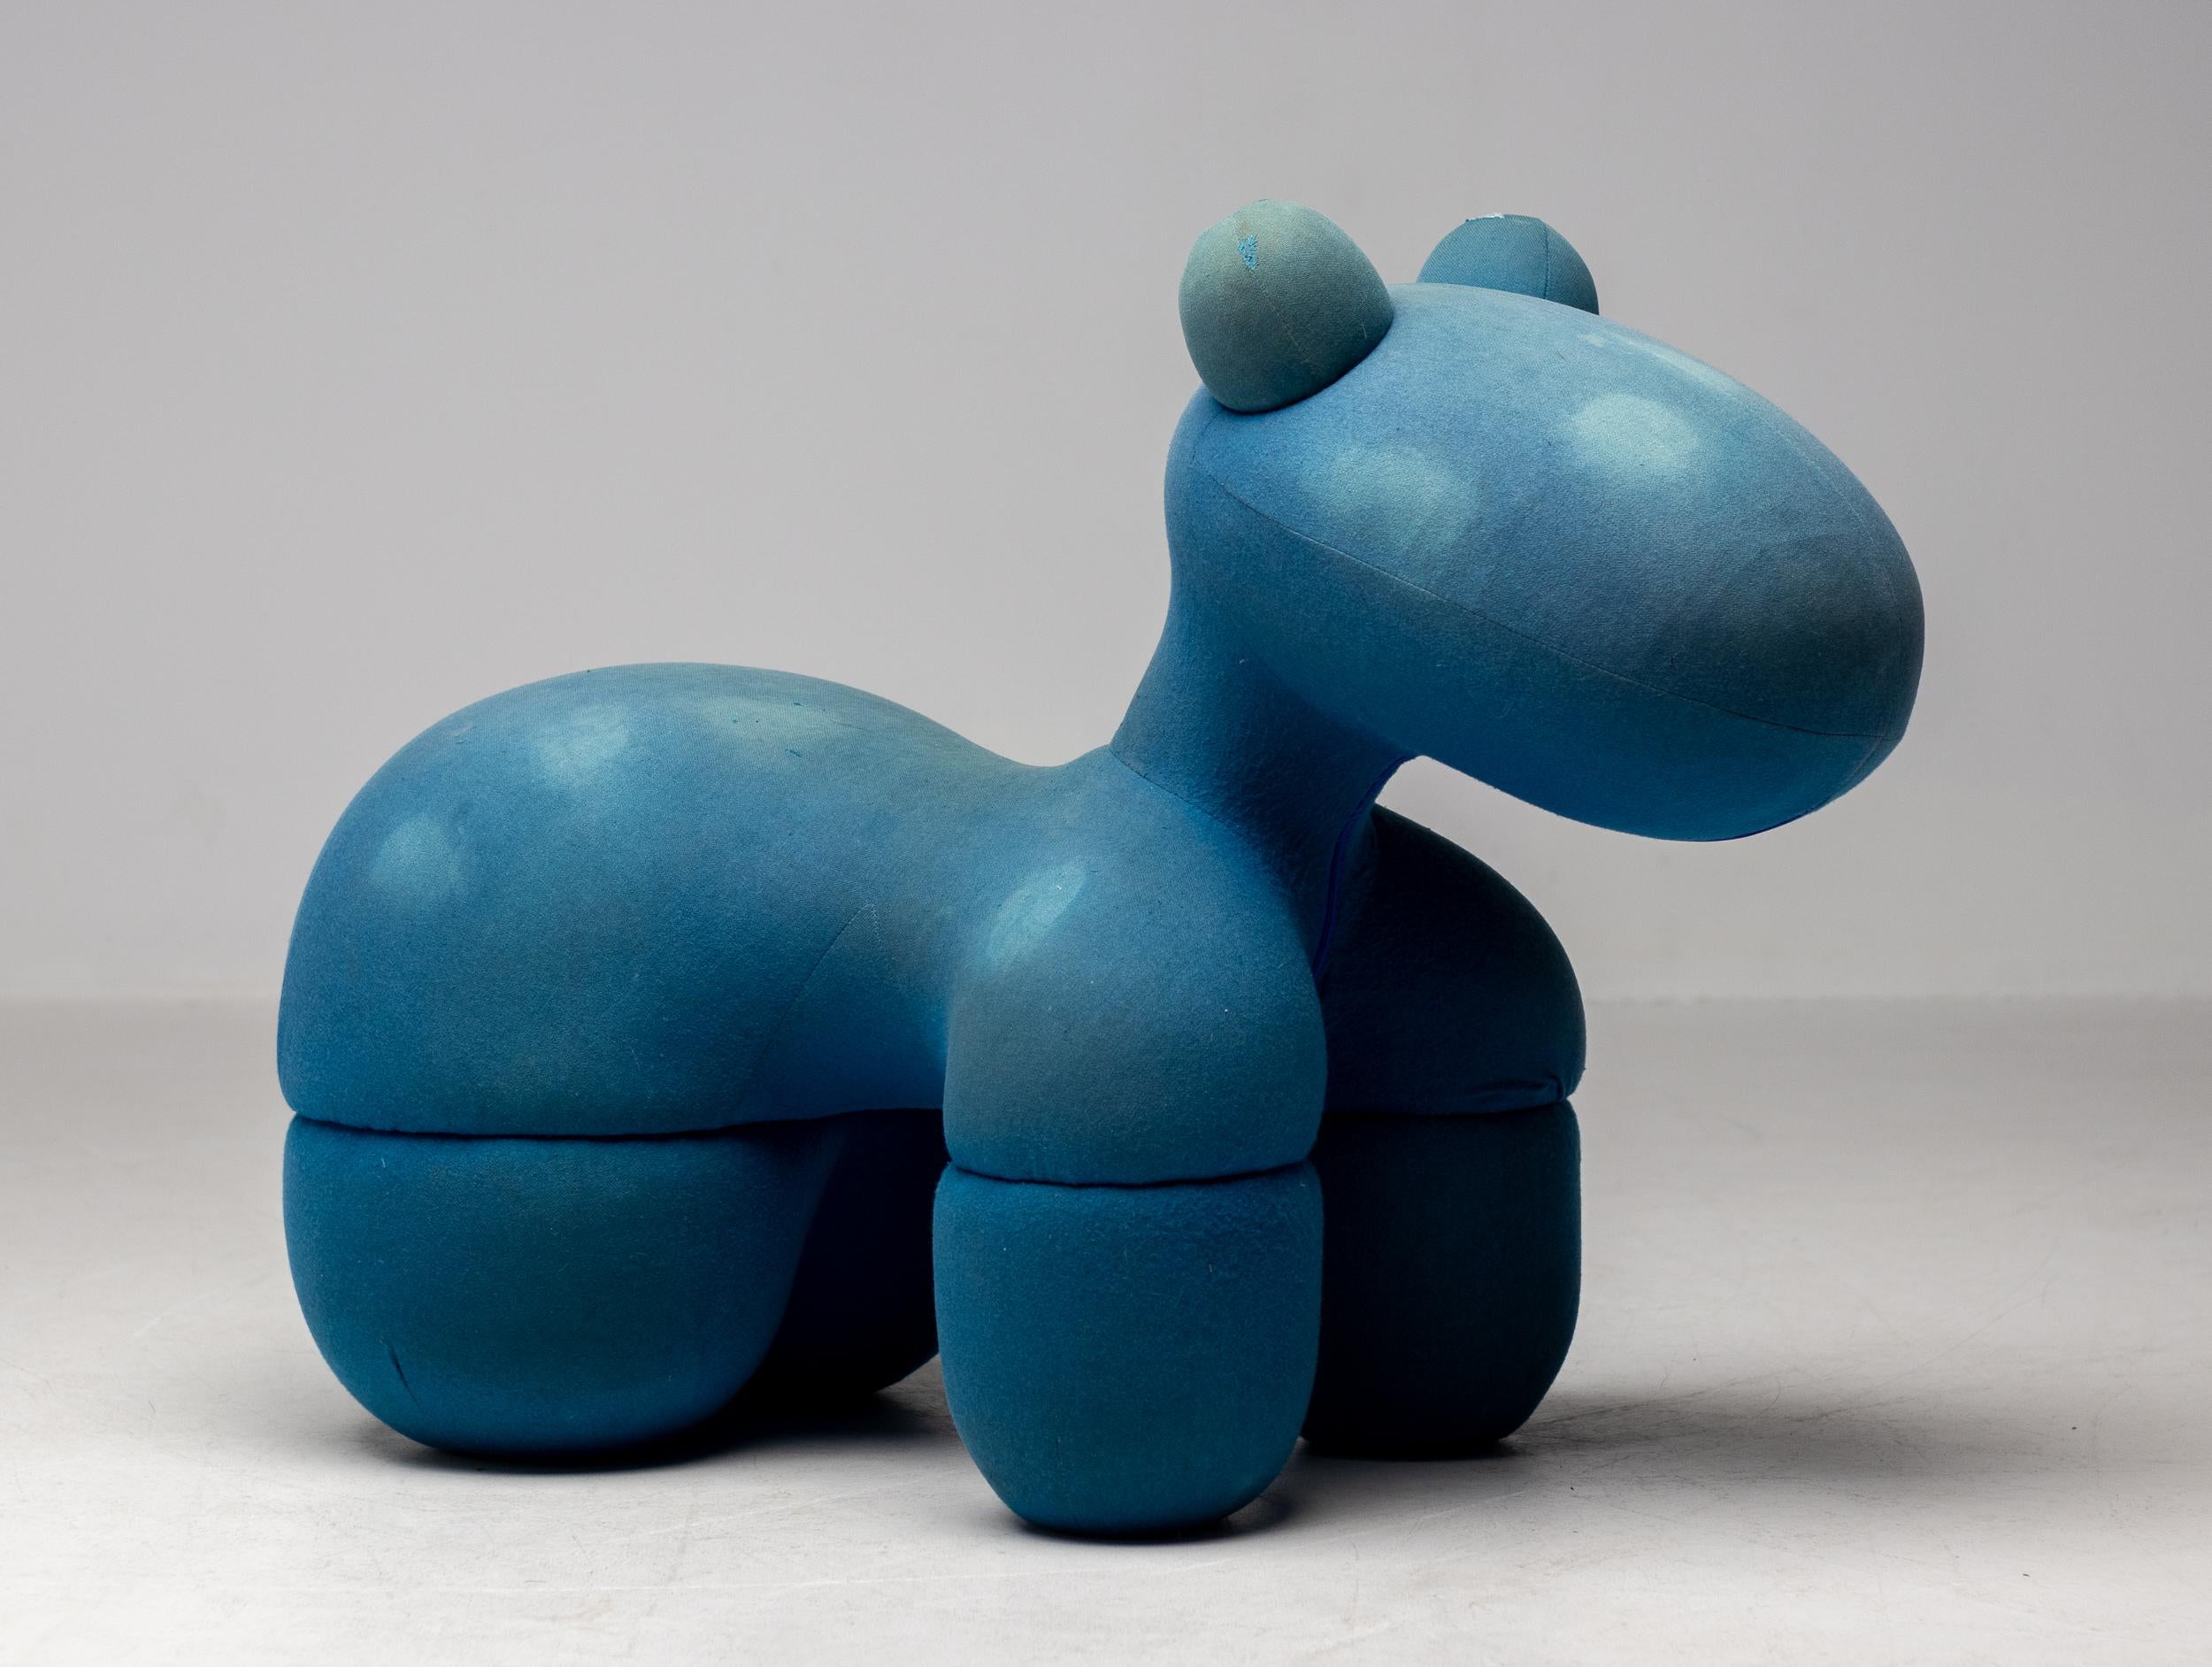 Rare, ludique et iconique Pony Chair du designer Eero Aarnio en tissu bleu d'origine. La chaise Pony a été conçue par le designer finlandais en 1973 et est depuis lors un élément incontournable du design contemporain. Cadre interne en acier. Objet